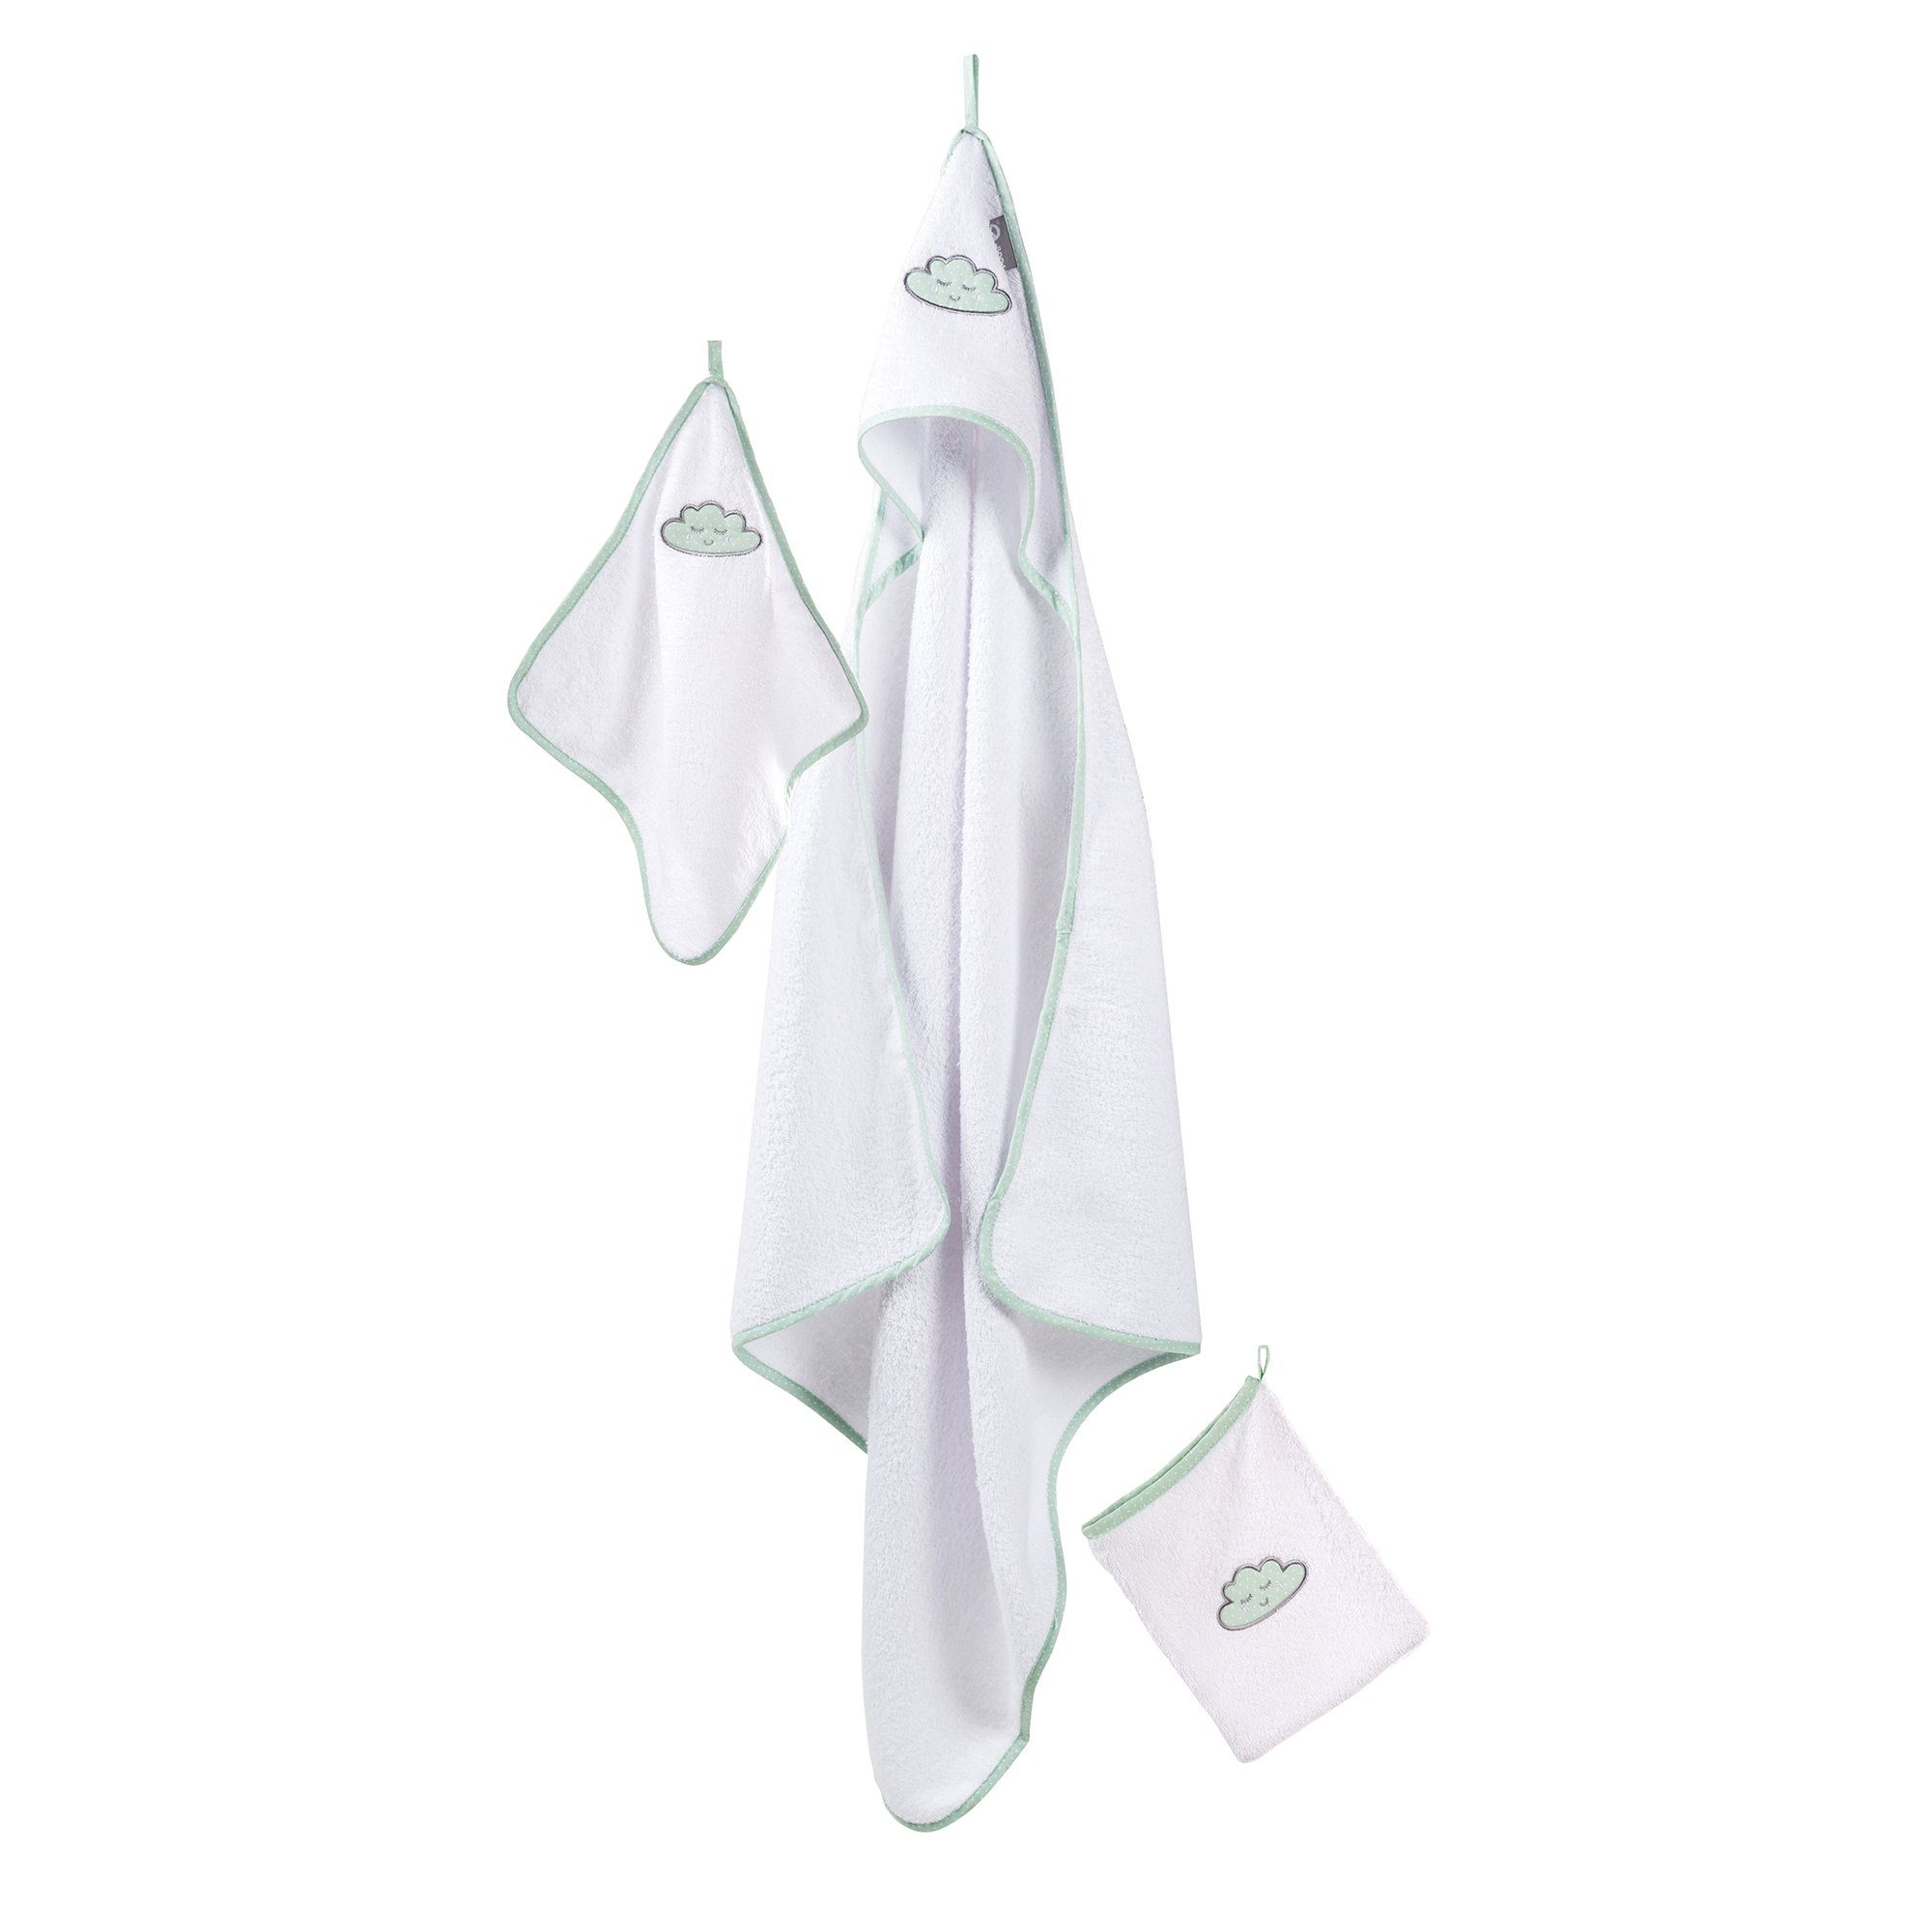 roba® Handtuch Set Frottee 3-teilig, Kapuzenhandtuch, Handtuch & Waschlappen Happy Cloud